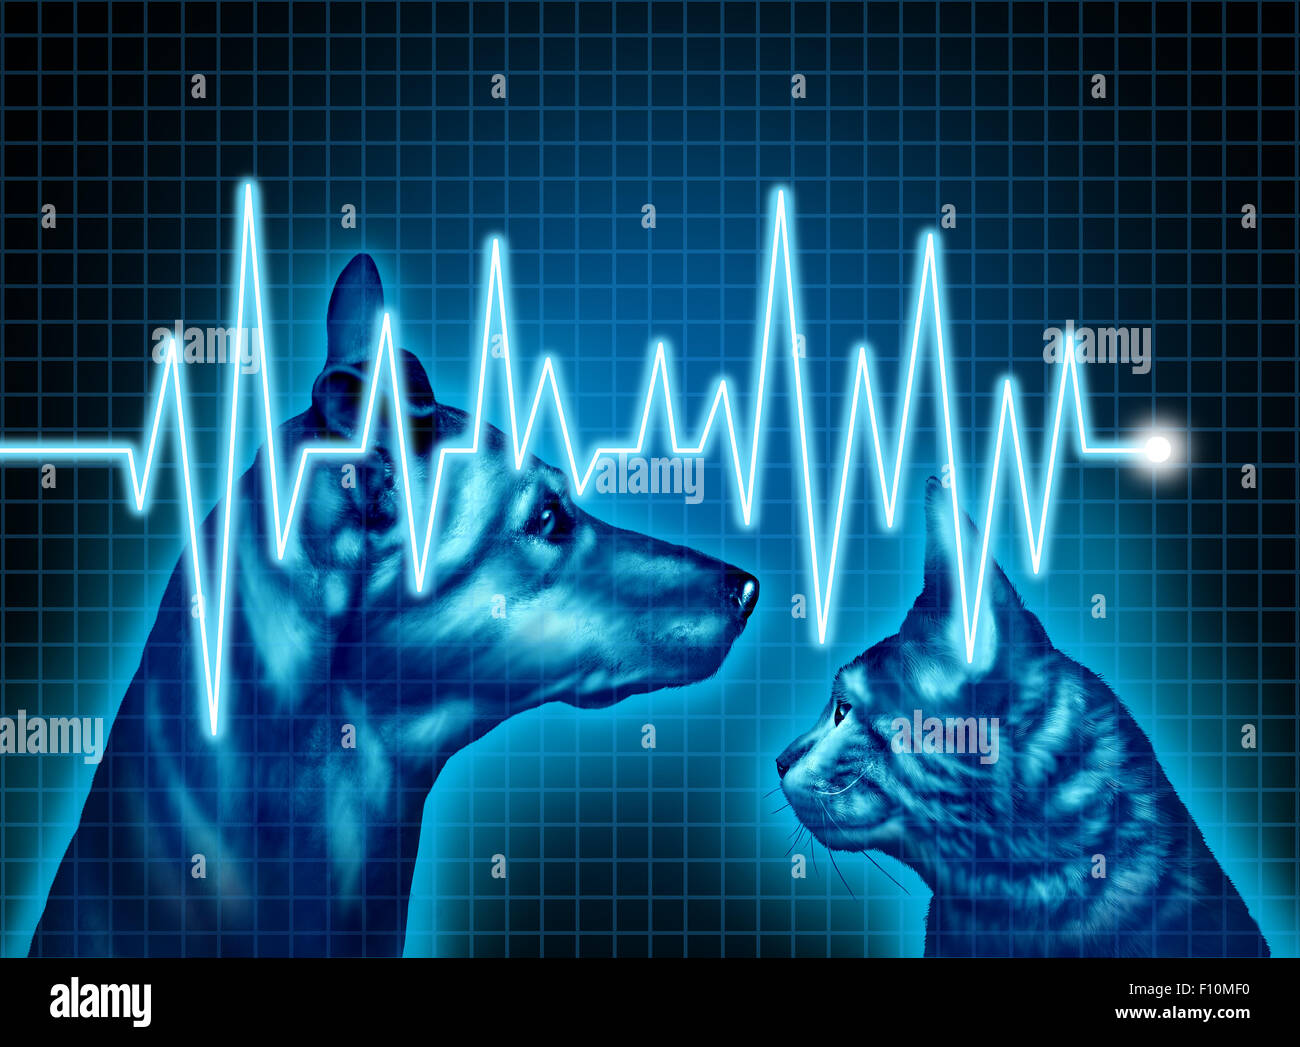 Soins de santé et d'assurance médicale pour les animaux de concept comme une illustration d'un chien et chat avec un ECG ou électrocardiogramme à lifeline comme un symbole Vétérinaire et médecin vétérinaire services. Banque D'Images